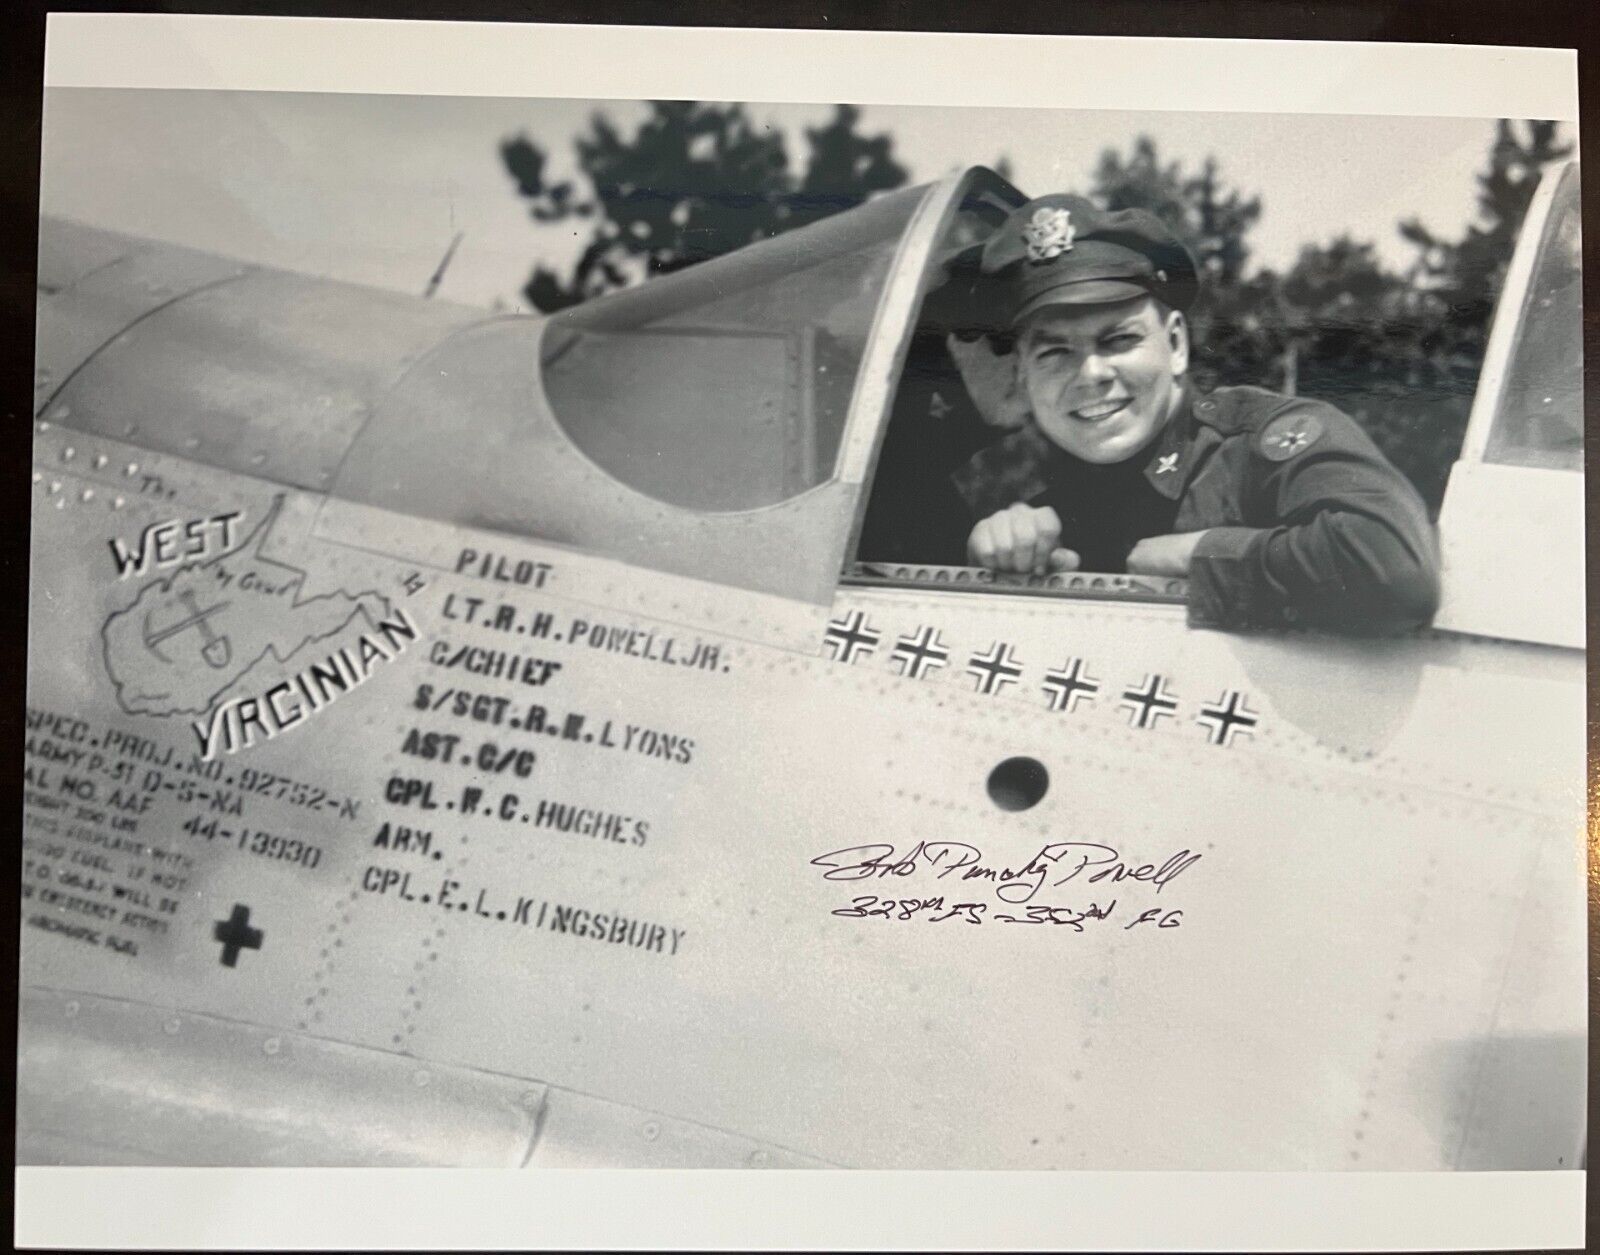 BOB PUNCHY POWELL WWII PILOT SIGNED 11X14 LARGE PHOTO 352ND FG BLUENOSE BASTARDS